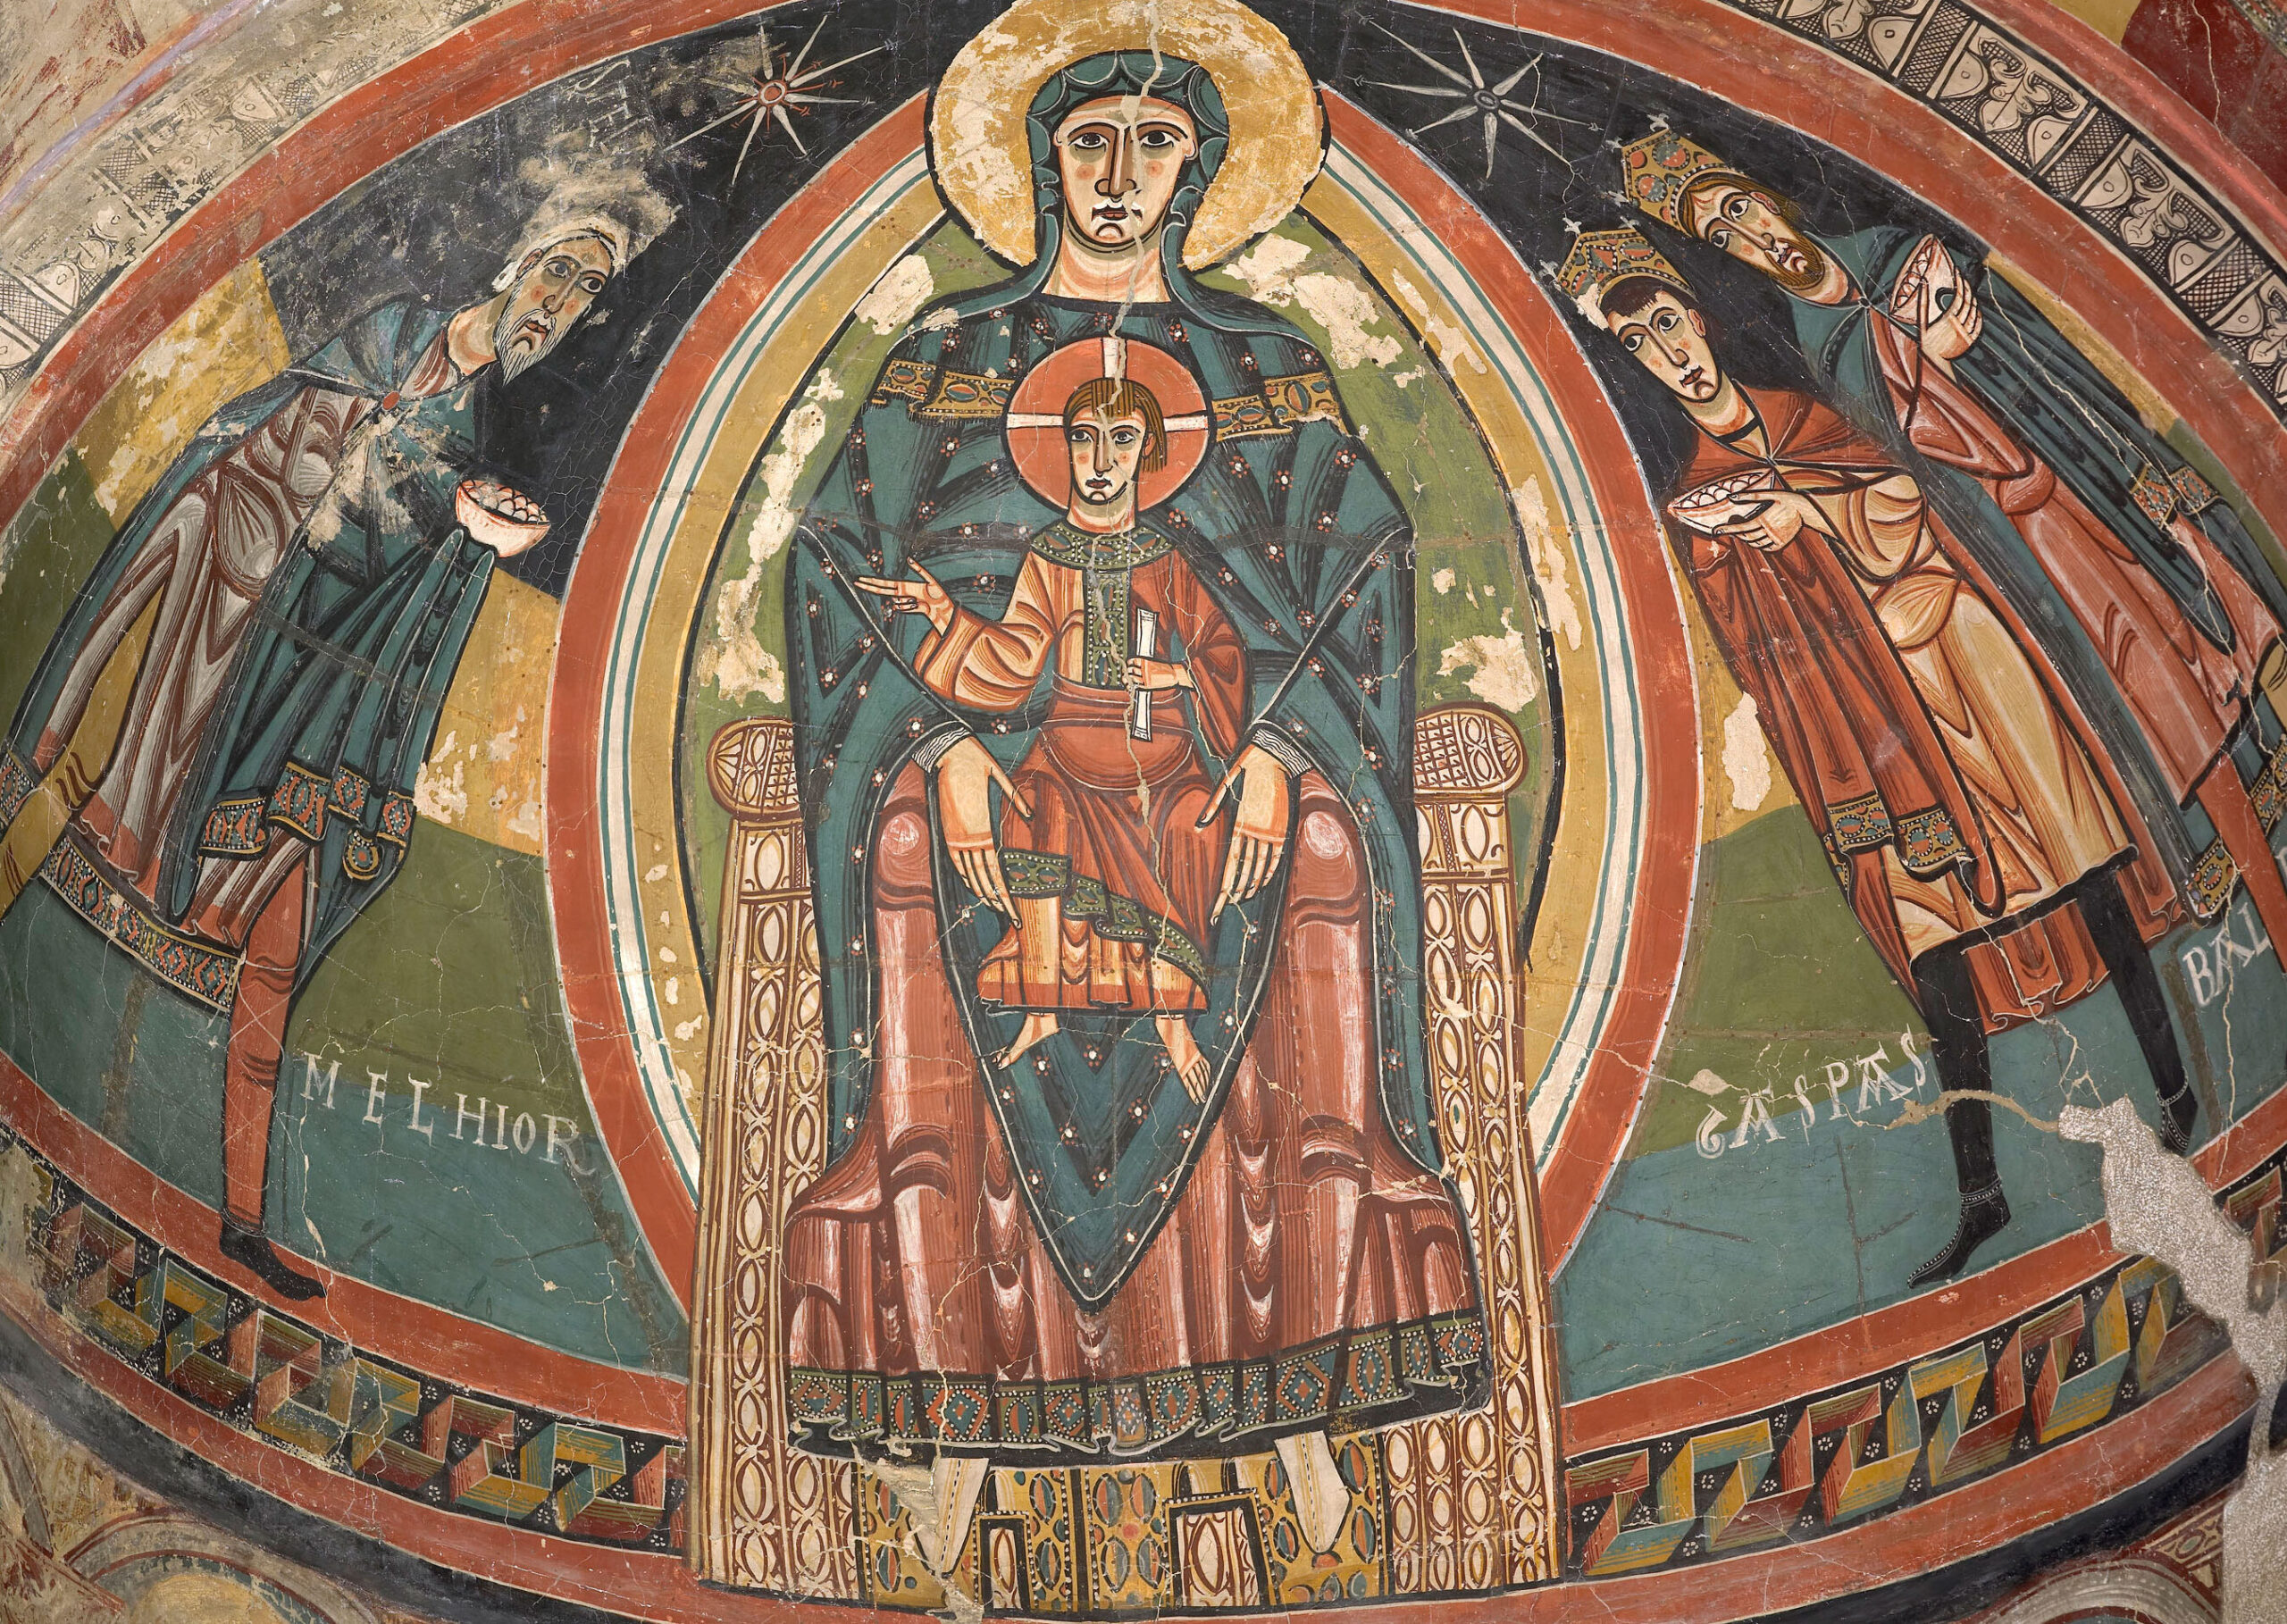 Características de la pintura románica: Un arte medieval lleno de simbolismo y espiritualidad